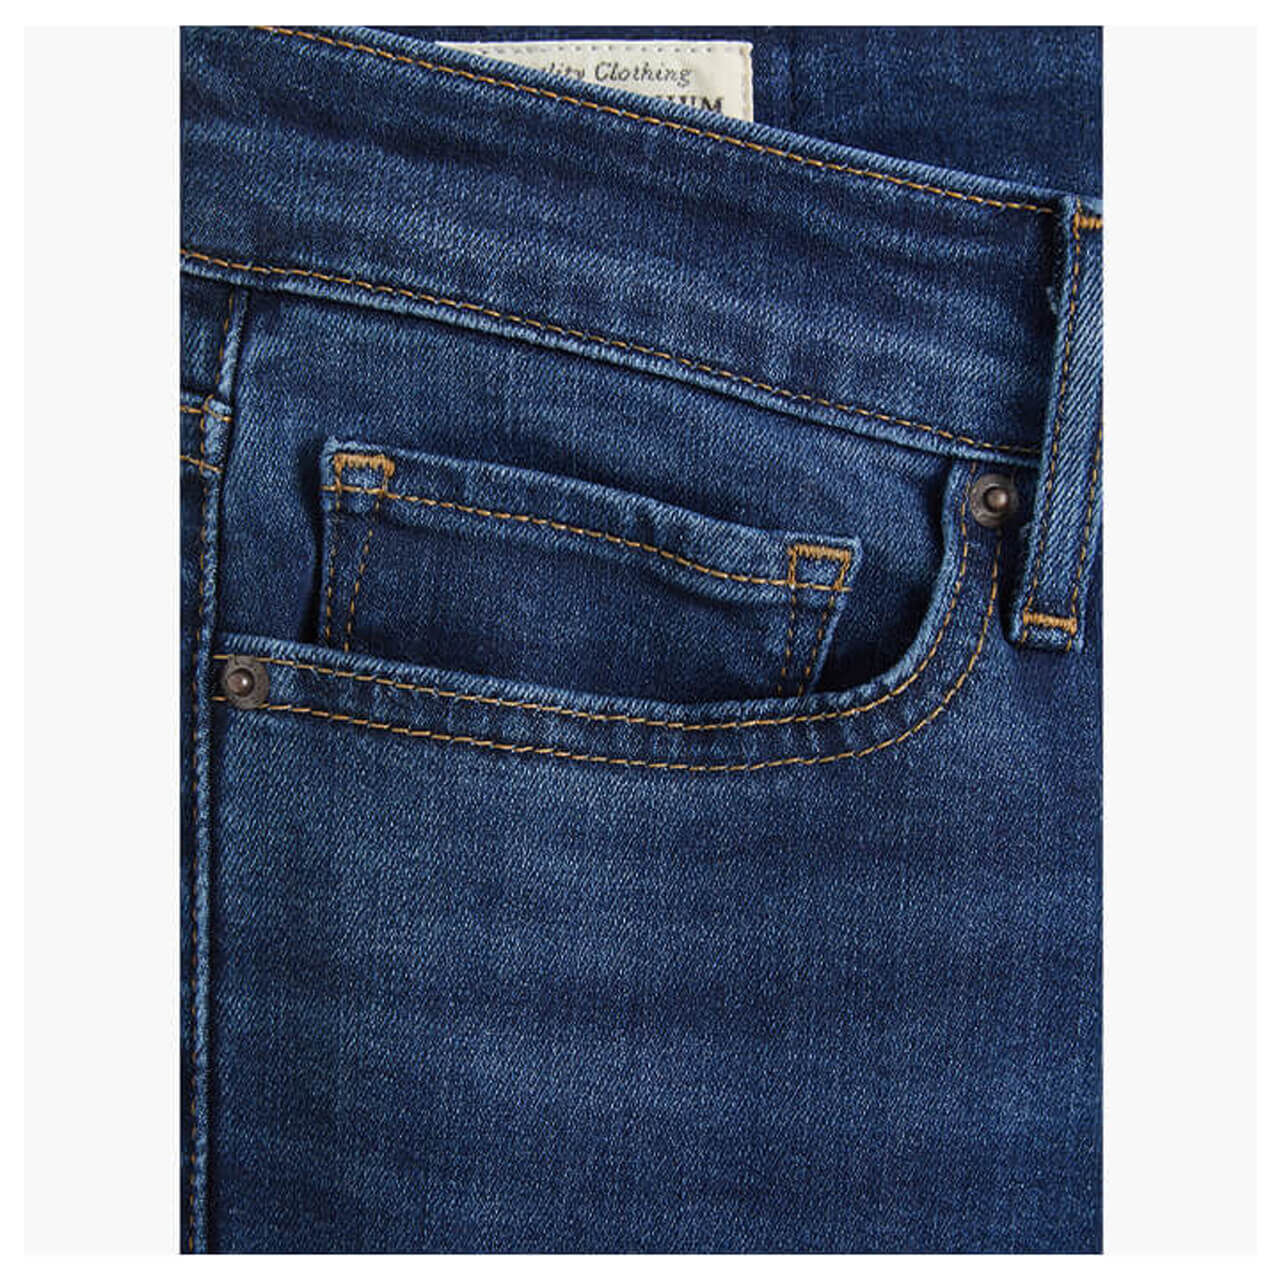 Levi's® 711 Damen Jeans Skinny bogota shake